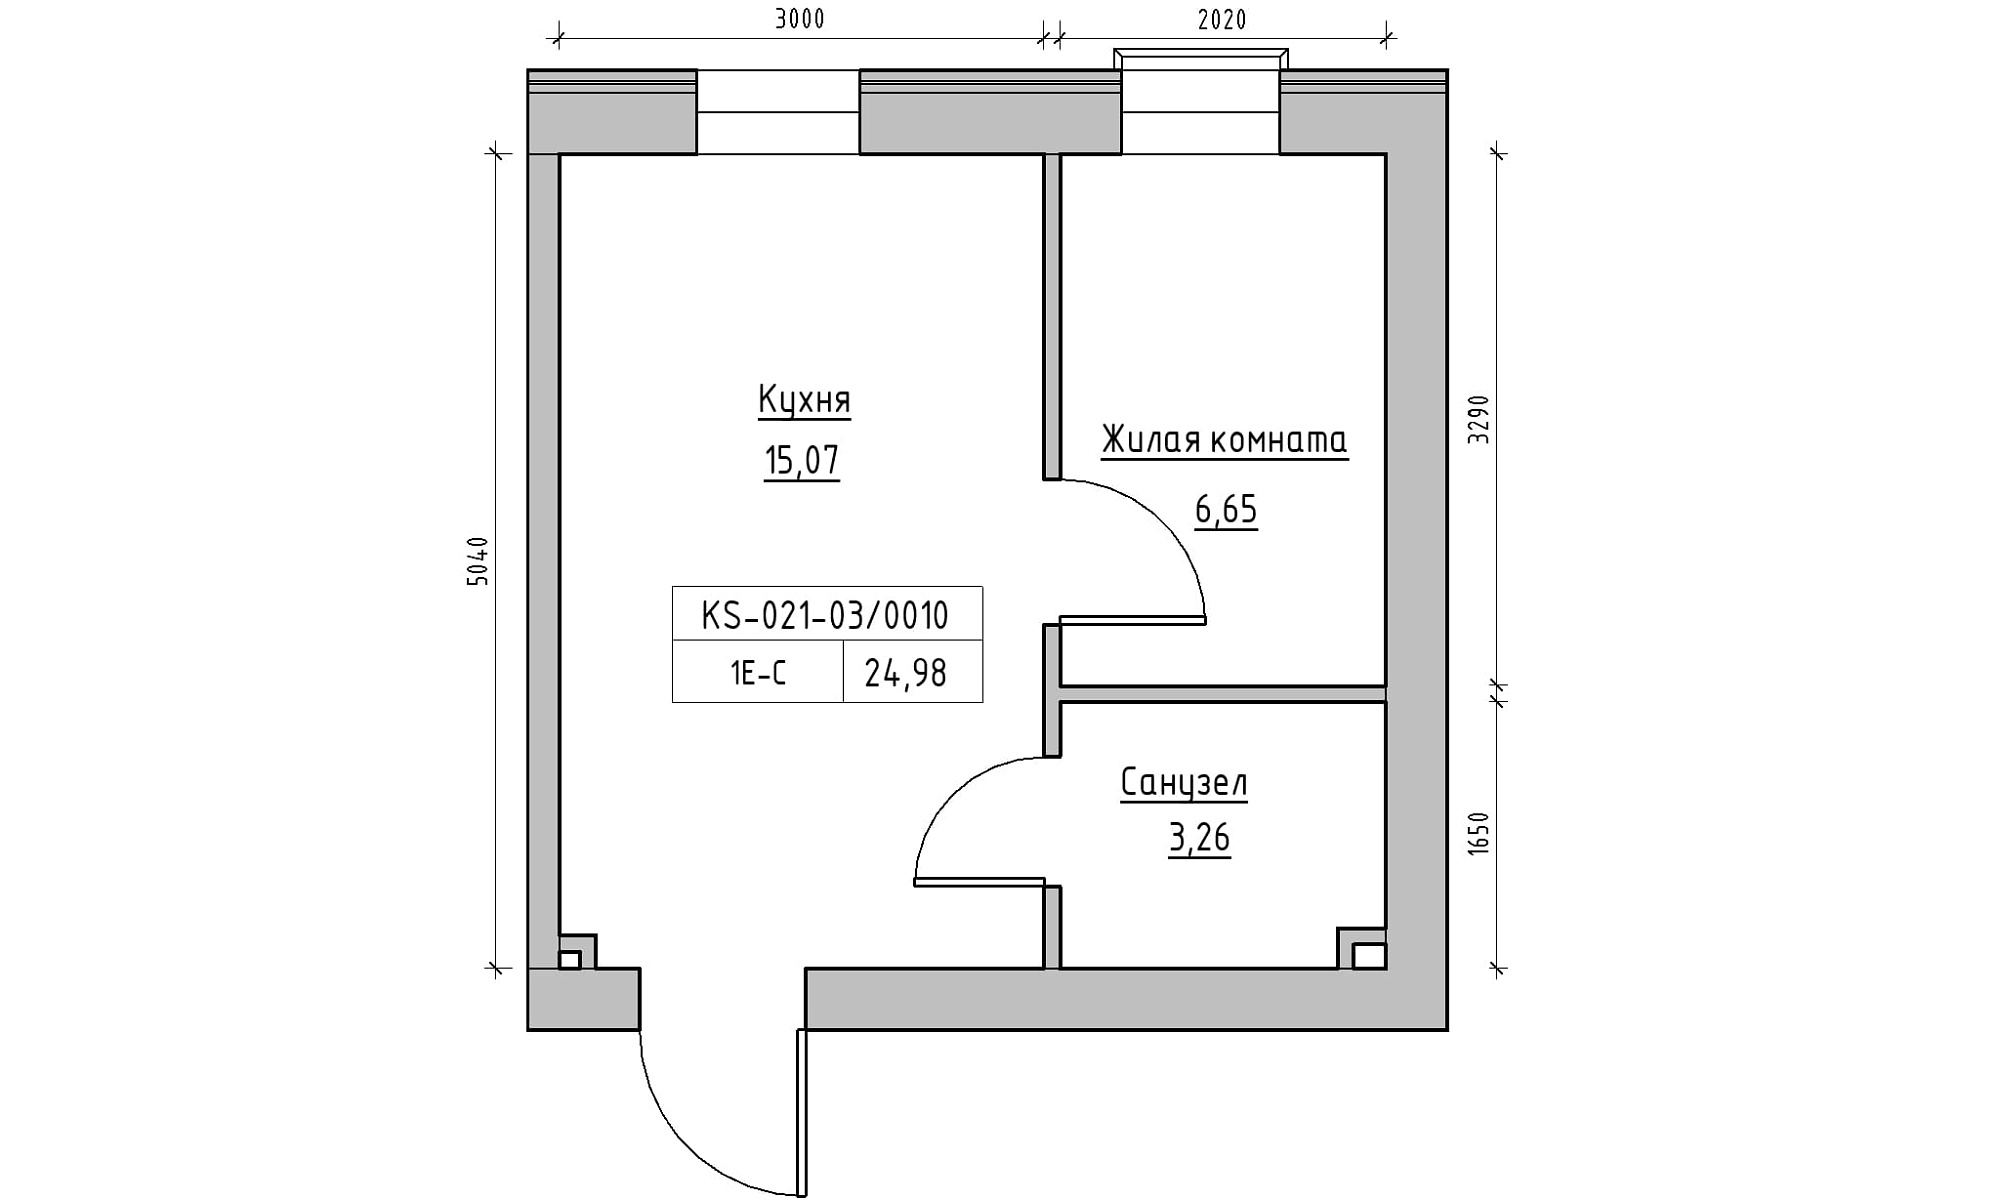 Планування 1-к квартира площею 24.98м2, KS-021-03/0010.